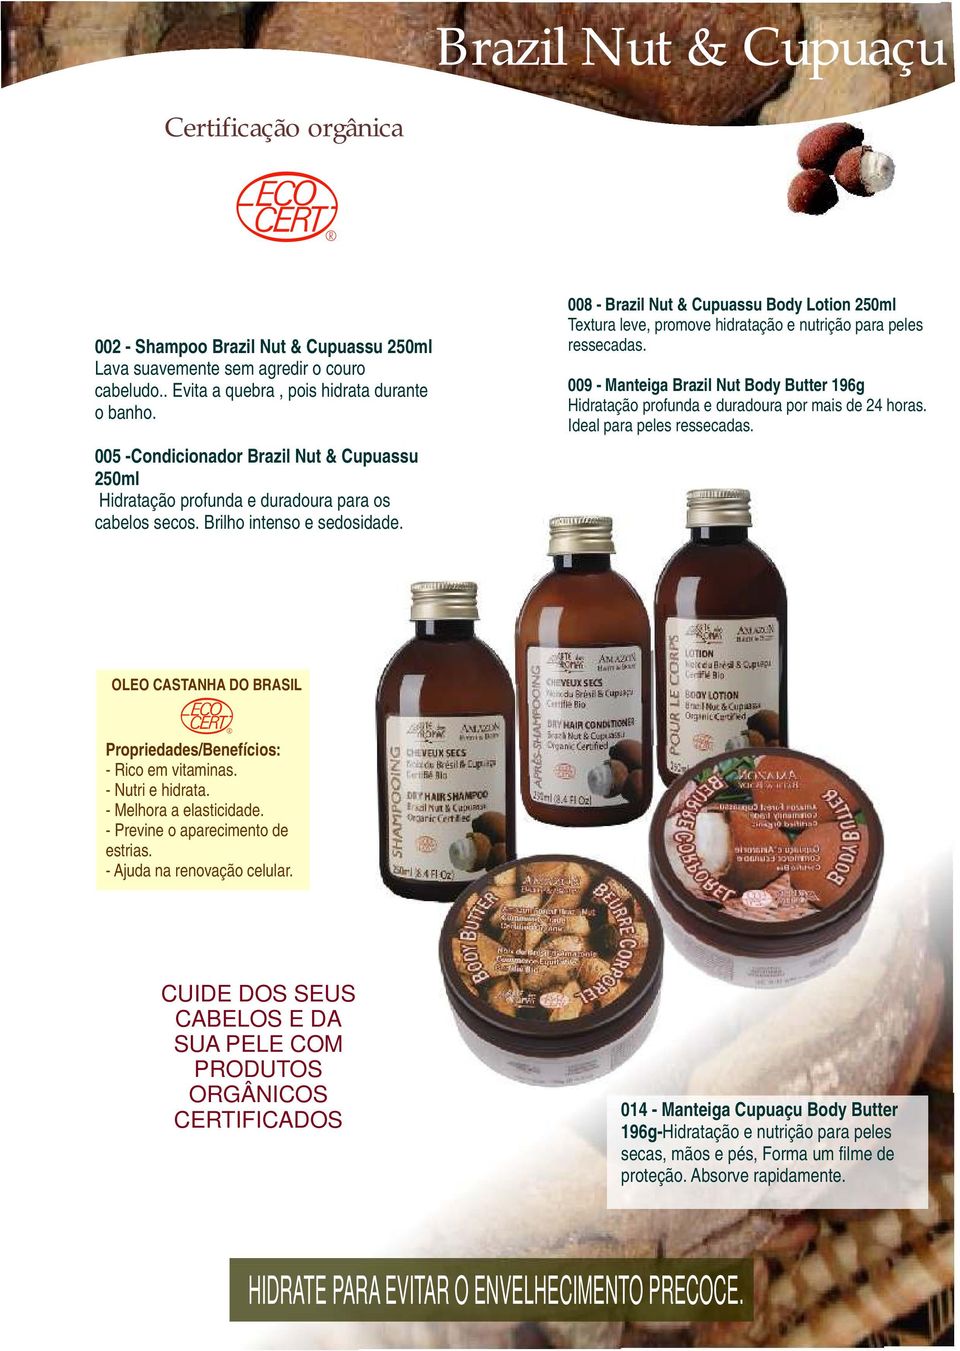 008 - Brazil Nut & Cupuassu Body Lotion 250ml Textura leve, promove hidratação e nutrição para peles ressecadas.